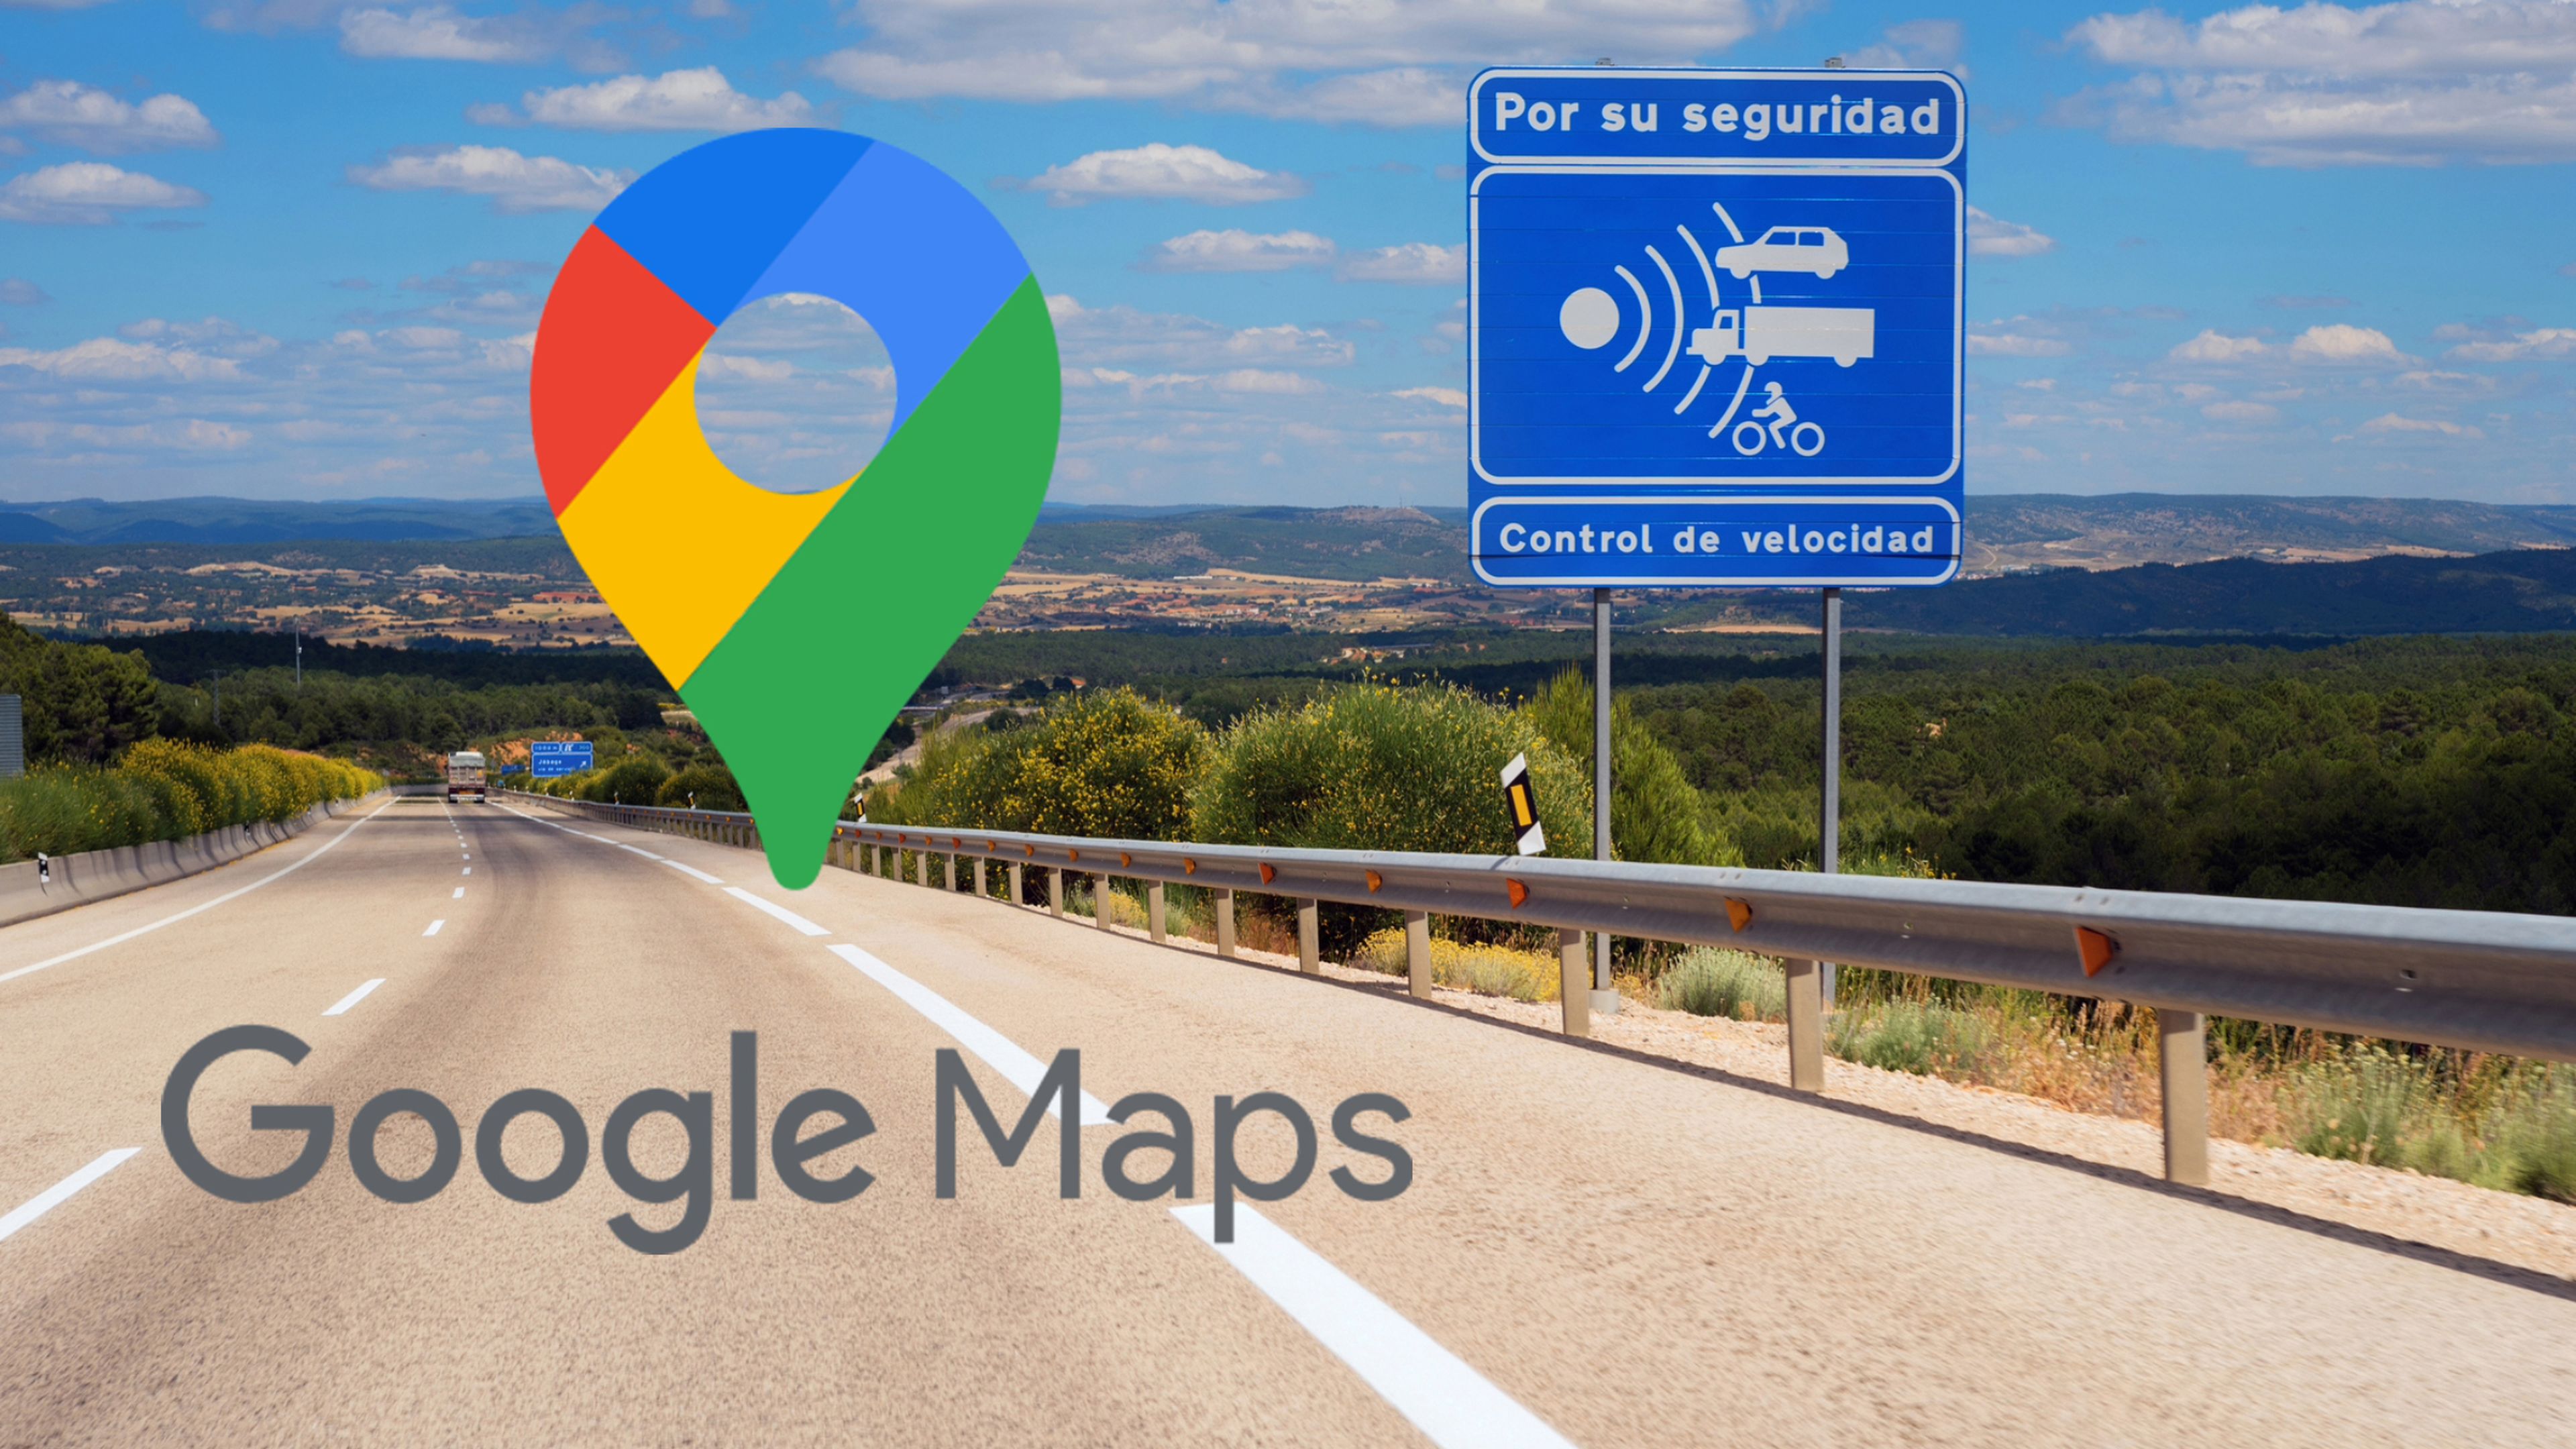 Google Maps radares